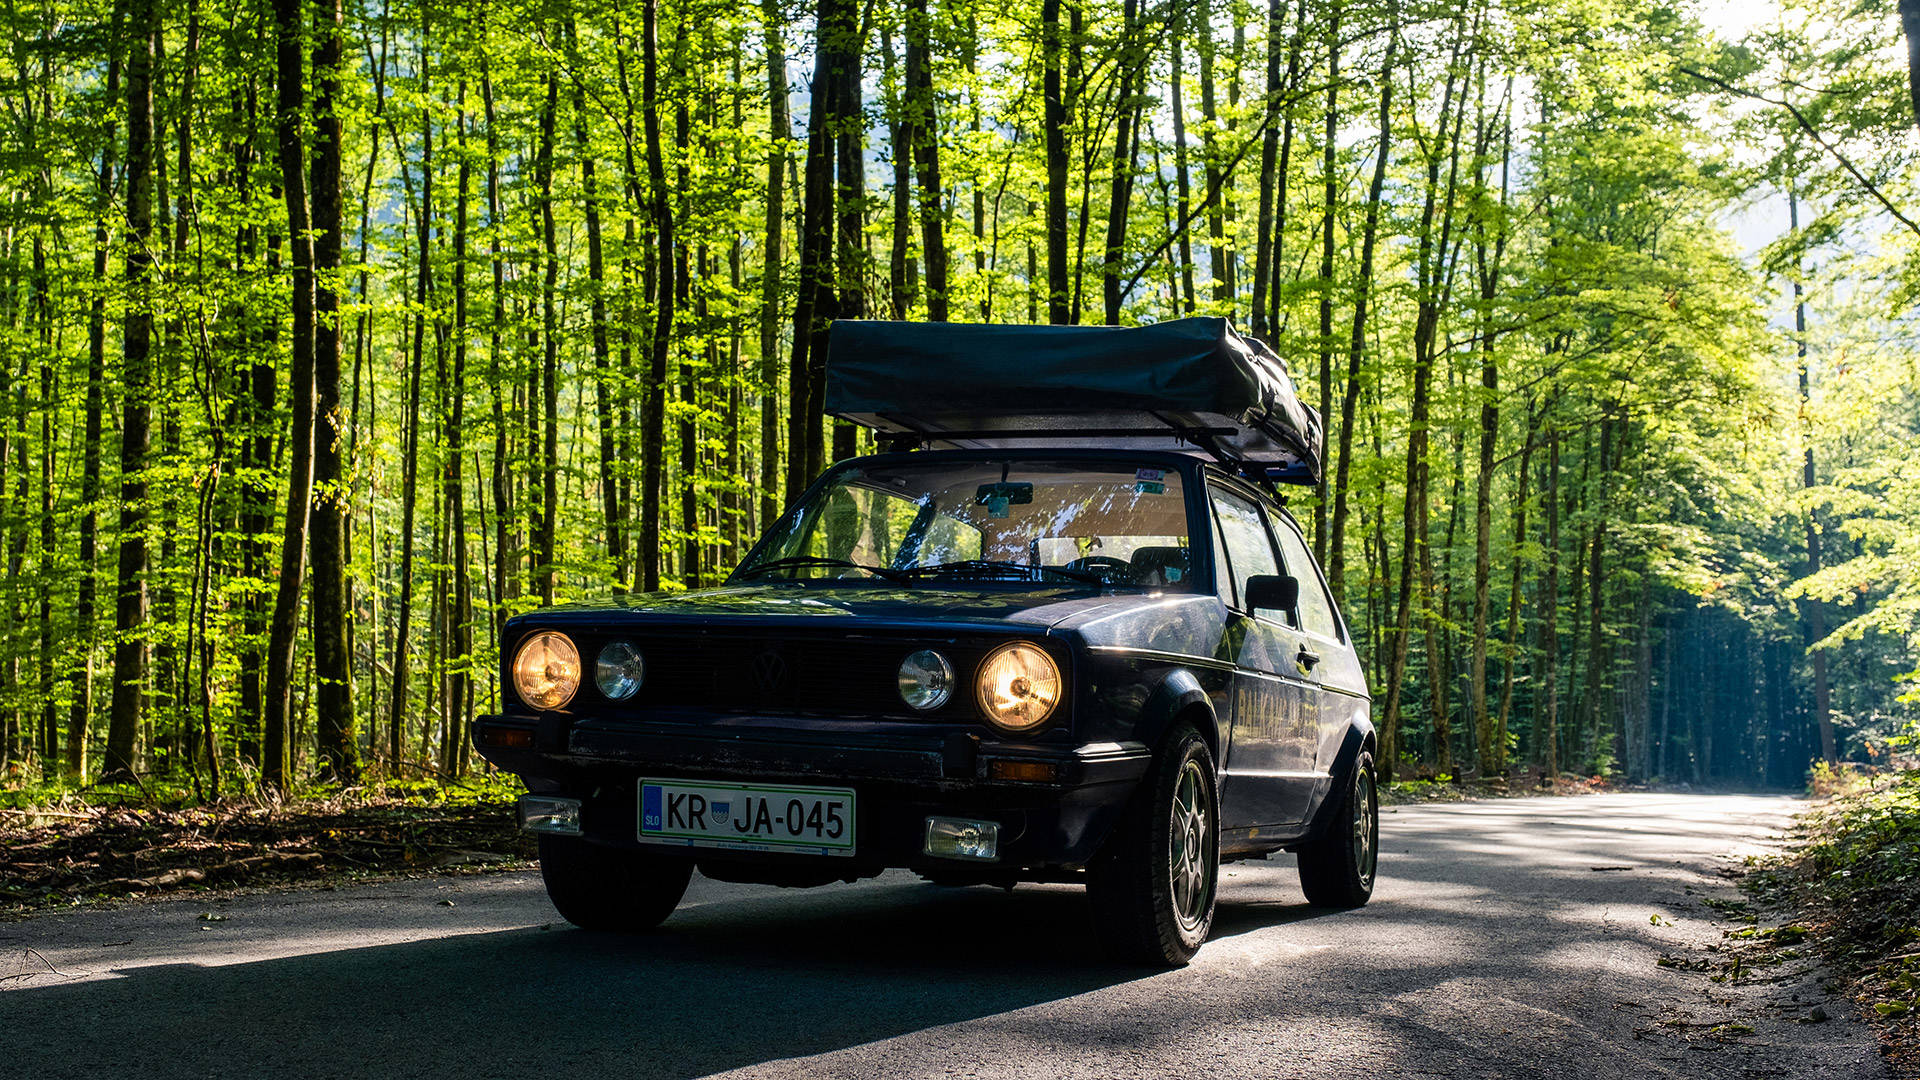 Volkswagen Golf 1 | Balkan Campers i Slovenien